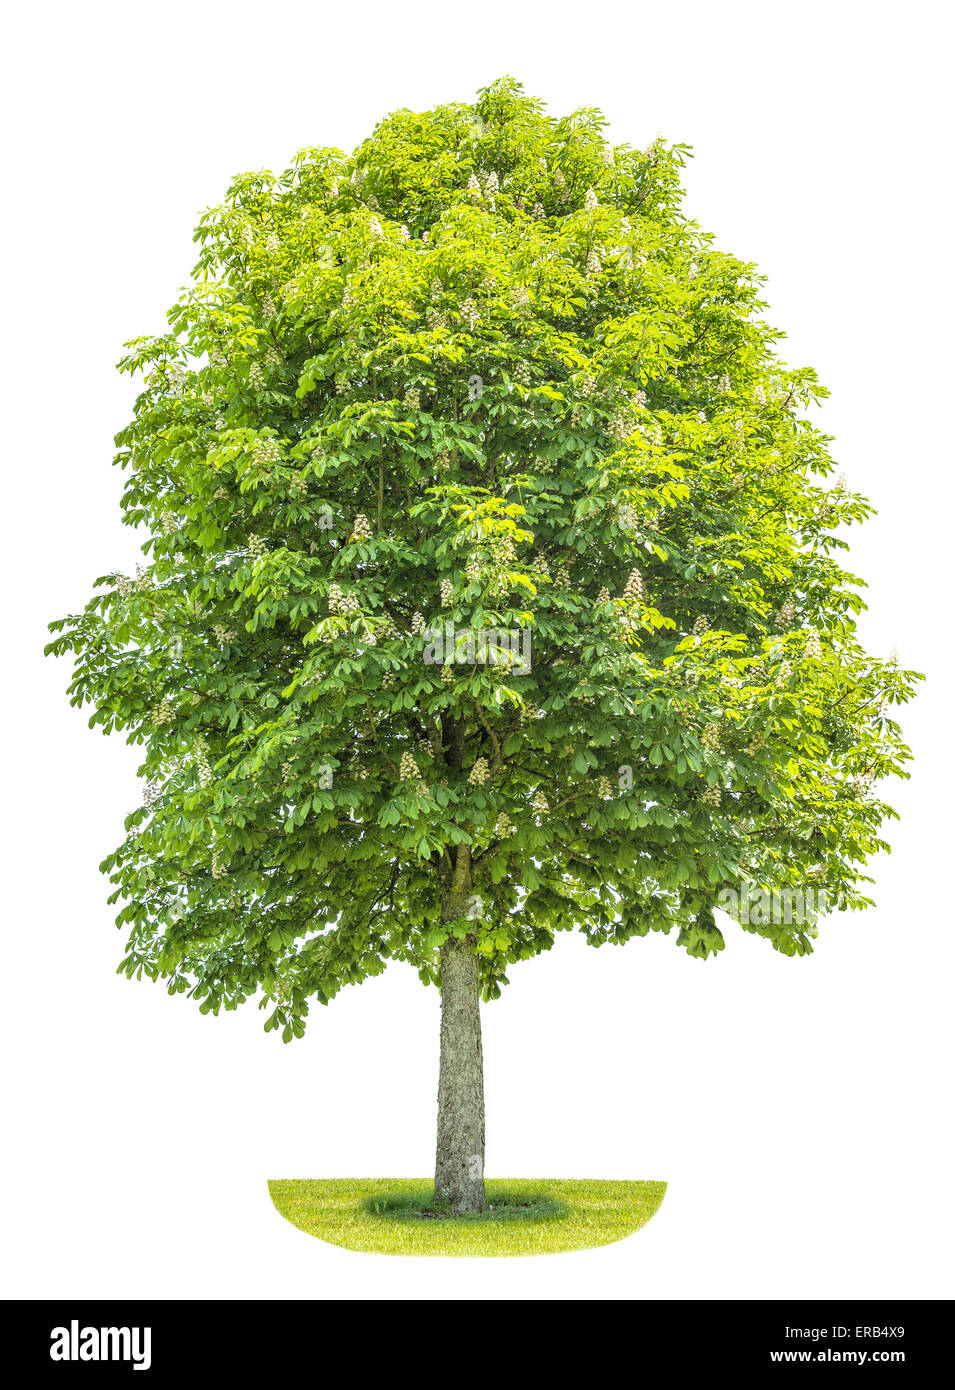 Marronnier (Aesculus hippocastanum, Conker arbre) isolé sur fond blanc. Usine de ressorts à prix coutant Lettre Banque D'Images